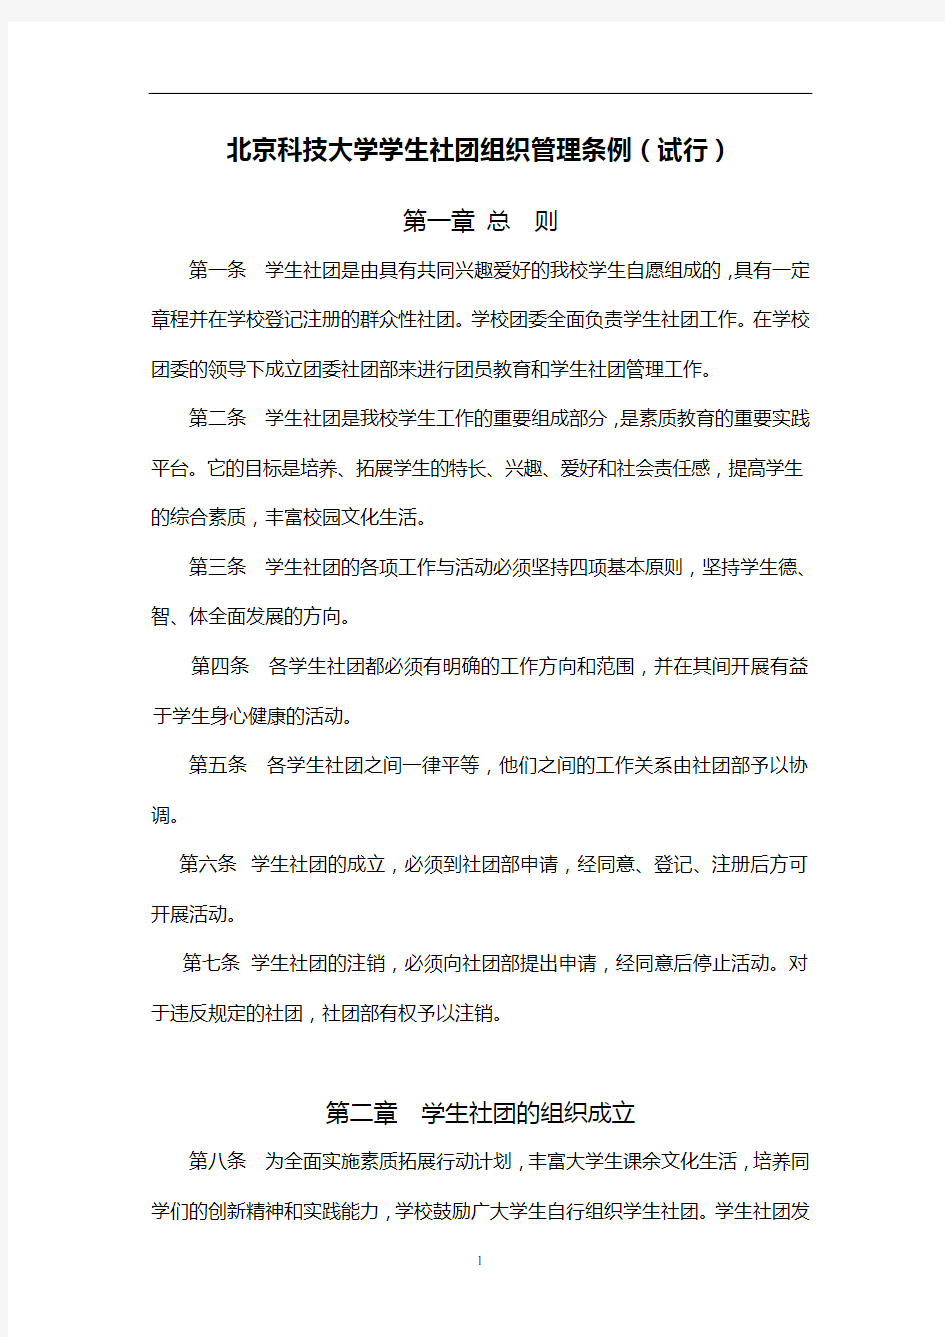 北京科技大学学生社团组织管理条例(试行)